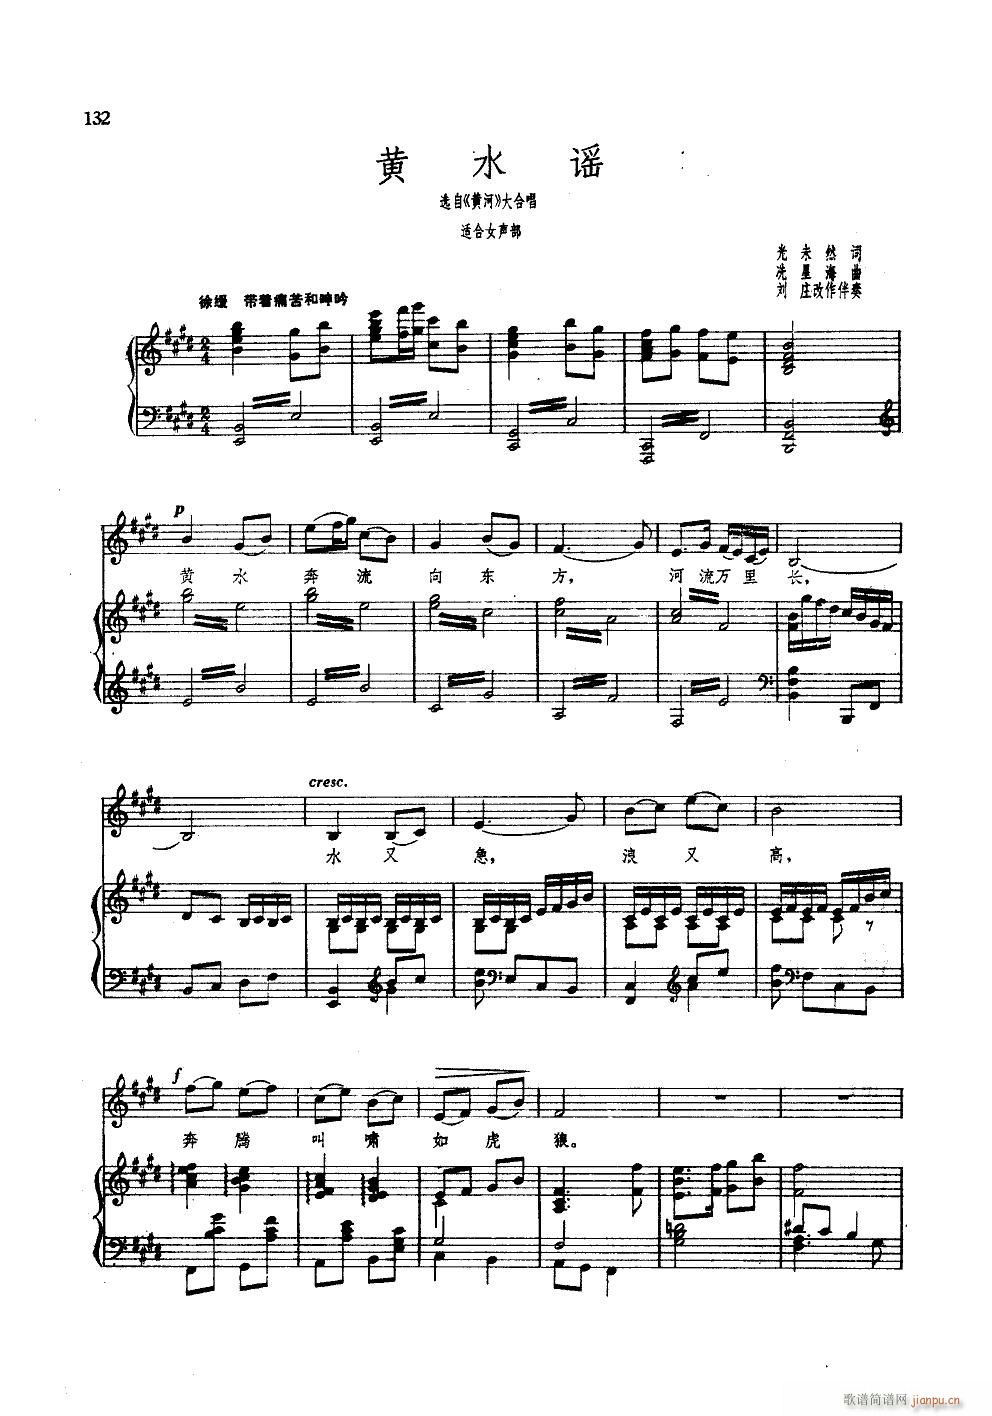 黄水谣 钢伴谱(钢琴谱)1